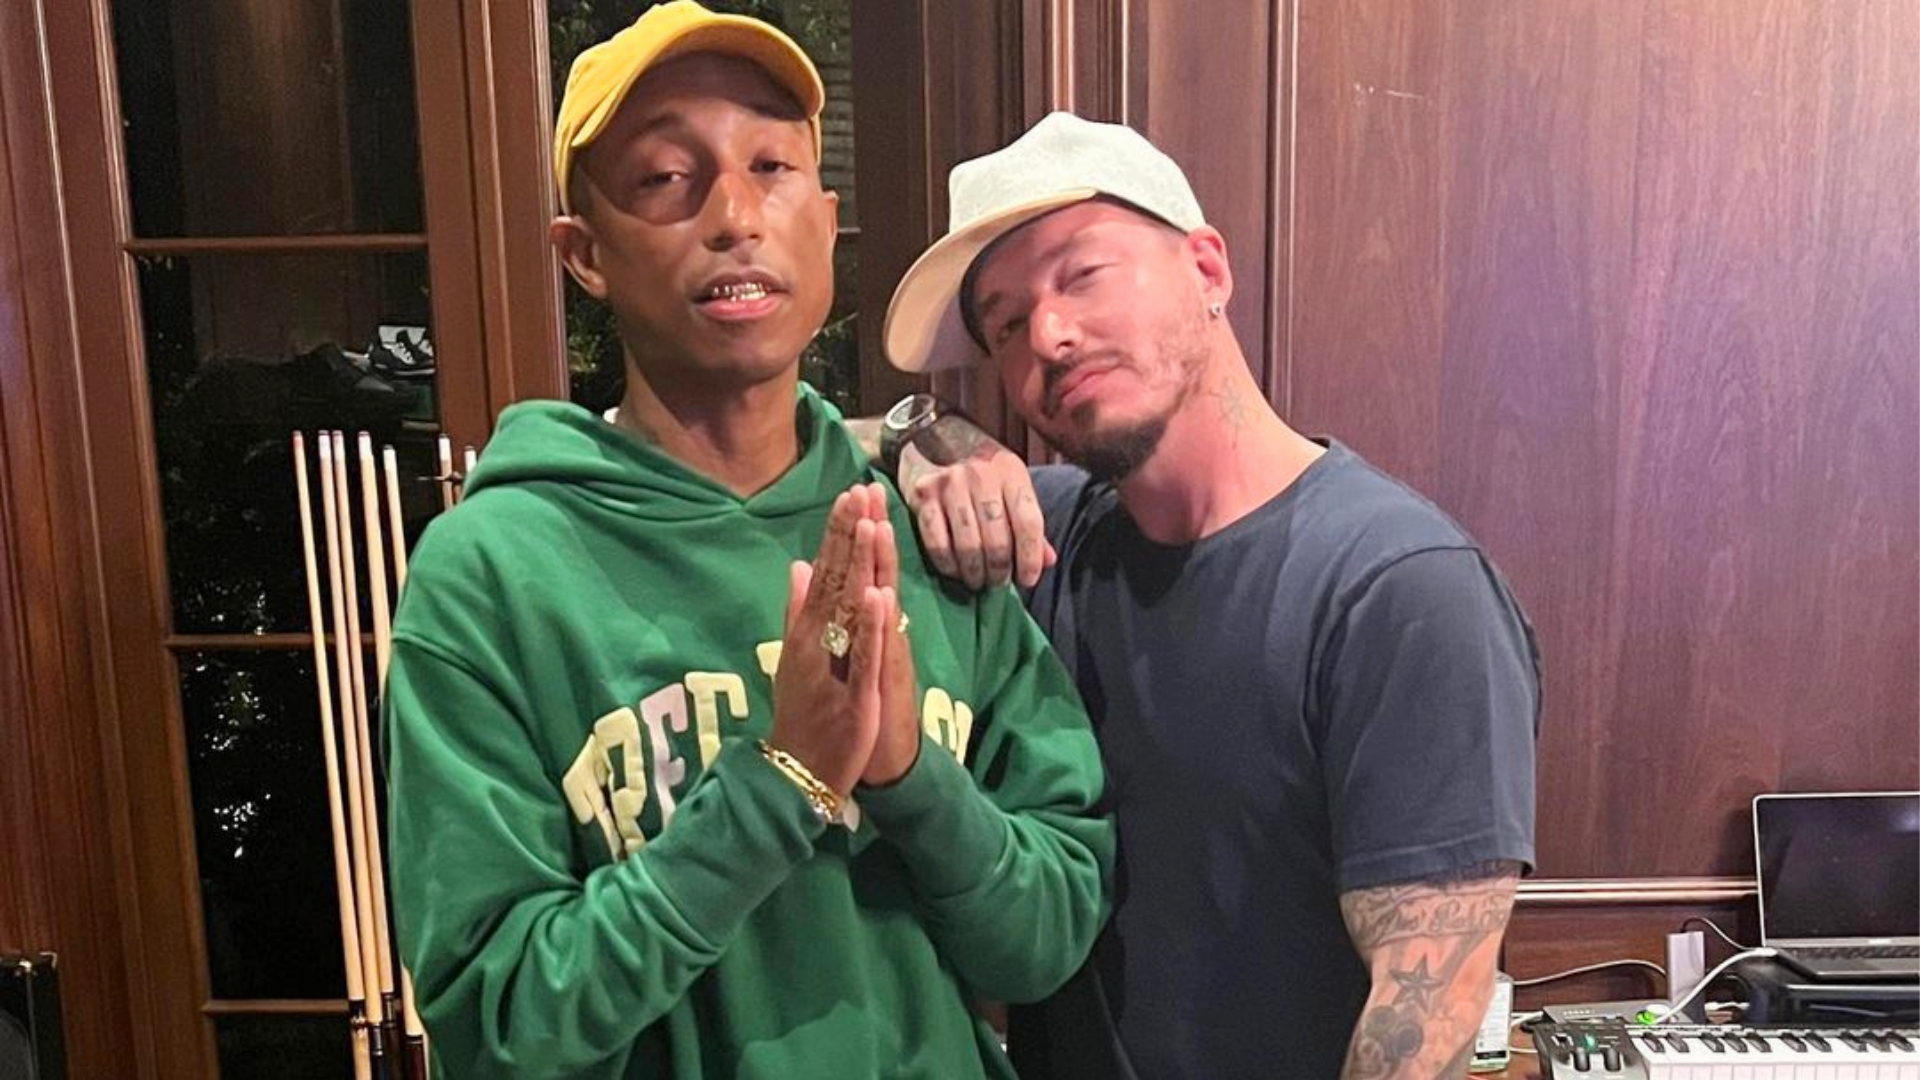 Noticias de moda en 1 minuto: Pharrell Williams es el nuevo